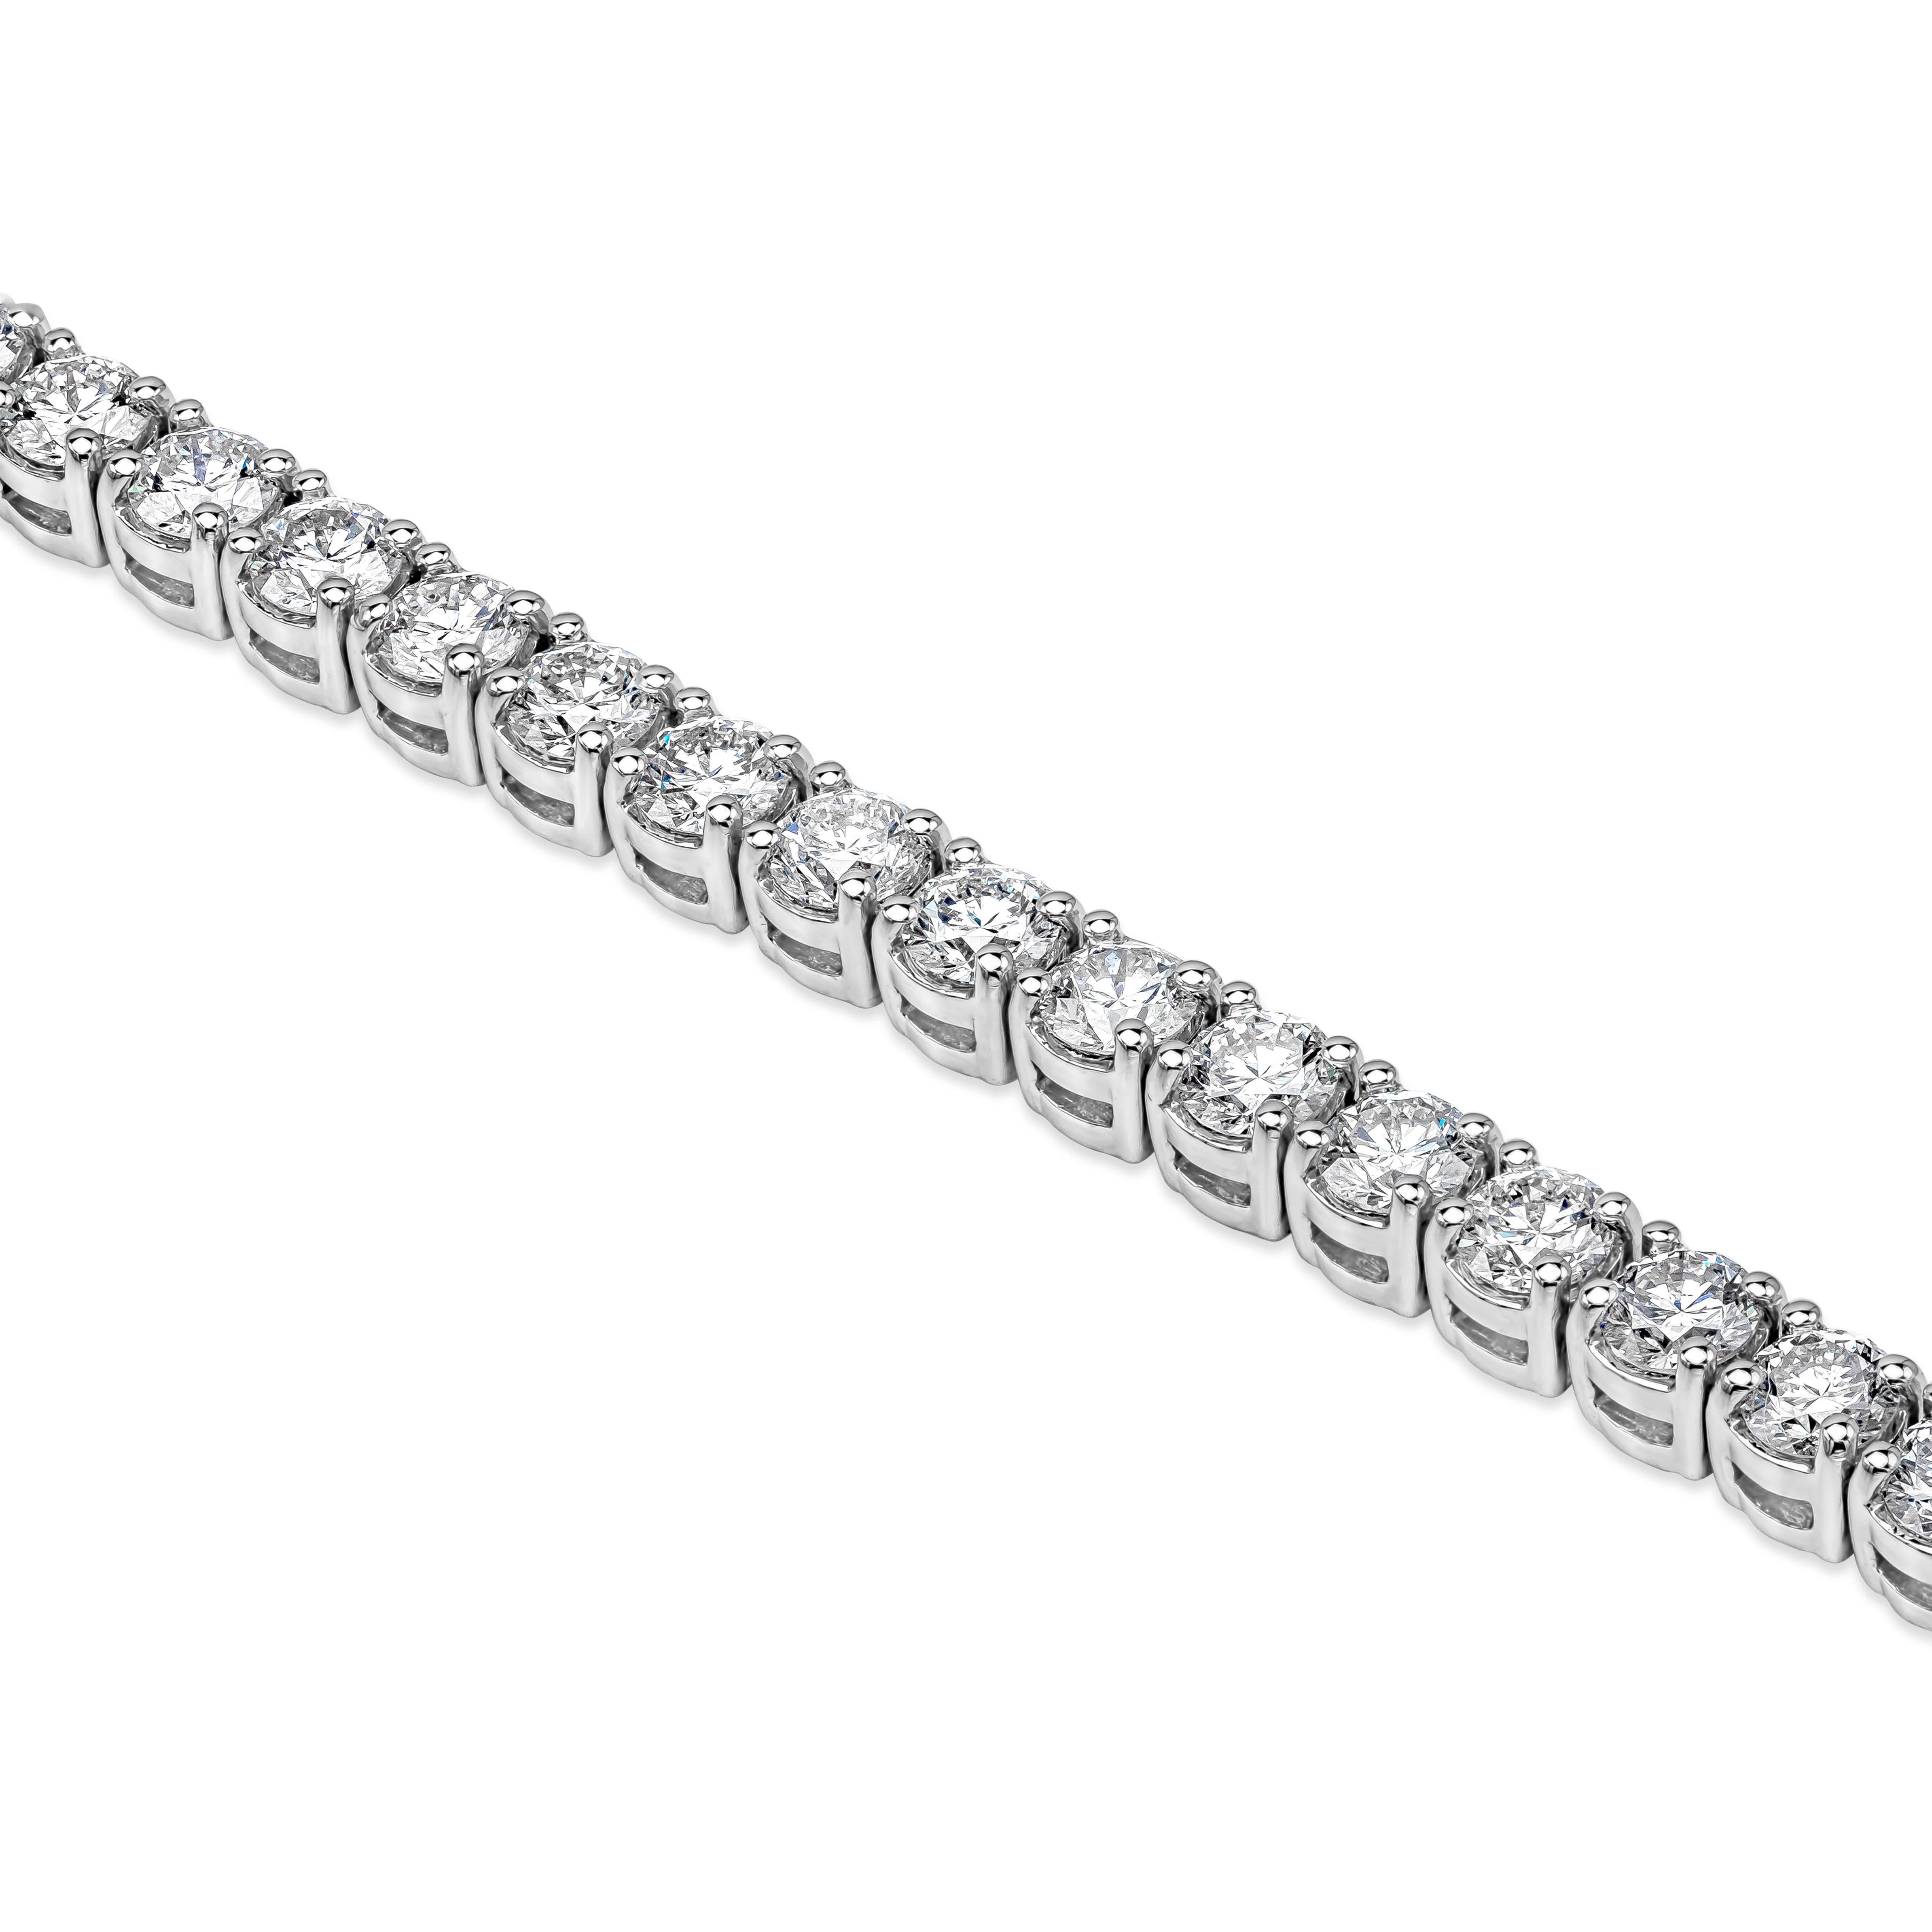 Un style de bracelet tennis classique mettant en valeur une rangée de diamants ronds de taille brillant pesant 7,00 carats au total, chacun étant serti dans un panier en or blanc 18k. Mécanisme de double verrouillage pour une sécurité maximale.